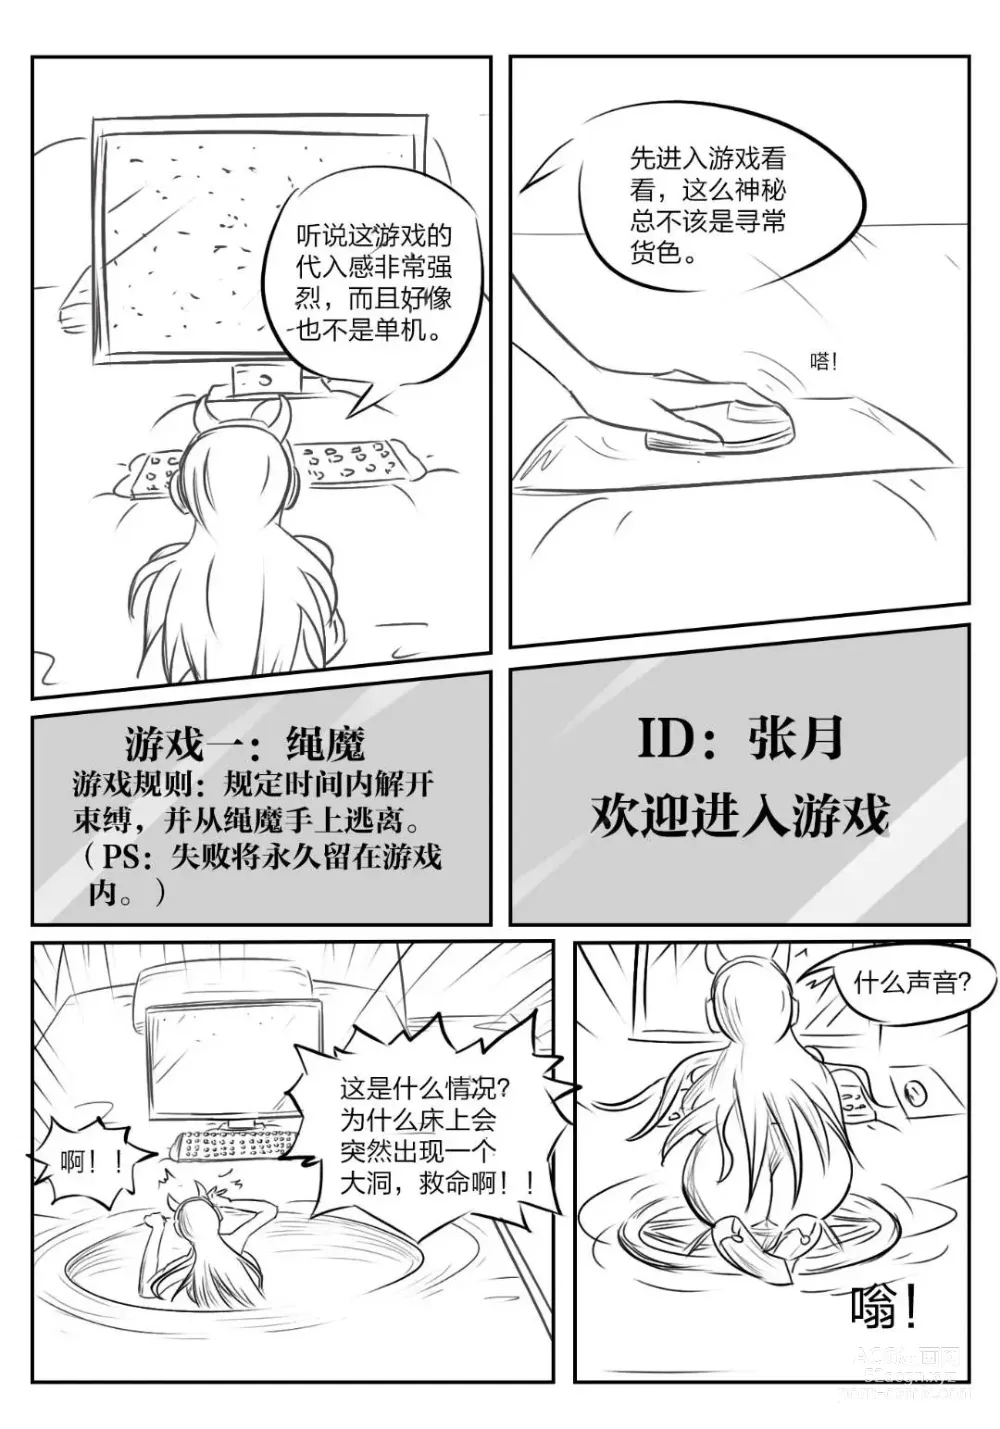 Page 3 of doujinshi 《被困游戏世界》